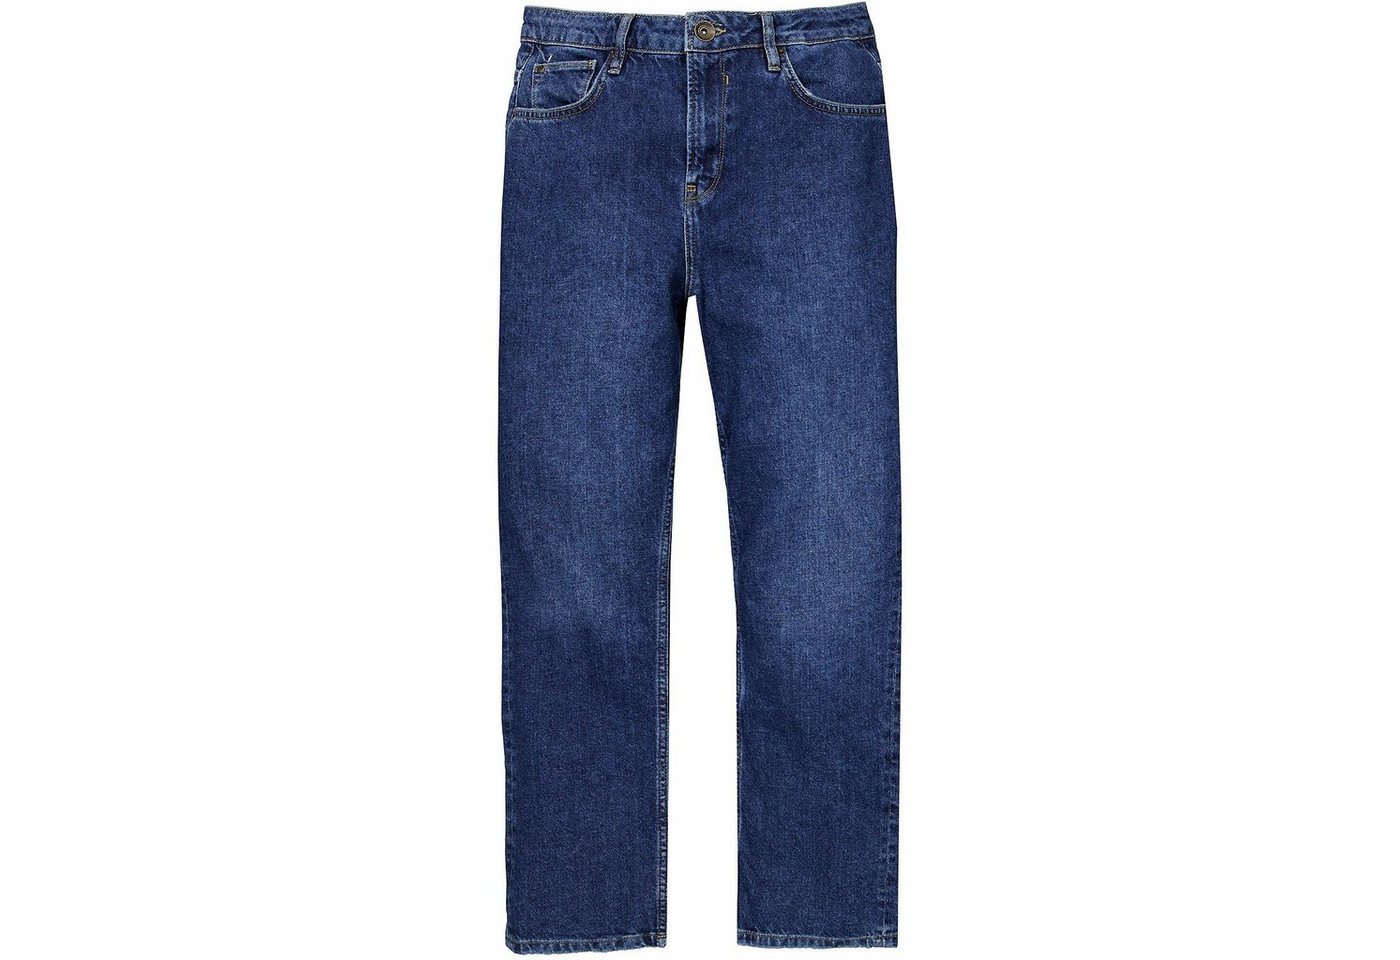 Garcia Funktionsshorts 5 Pocket Jeans 5 Pocket Jeans › blau  - Onlineshop OTTO